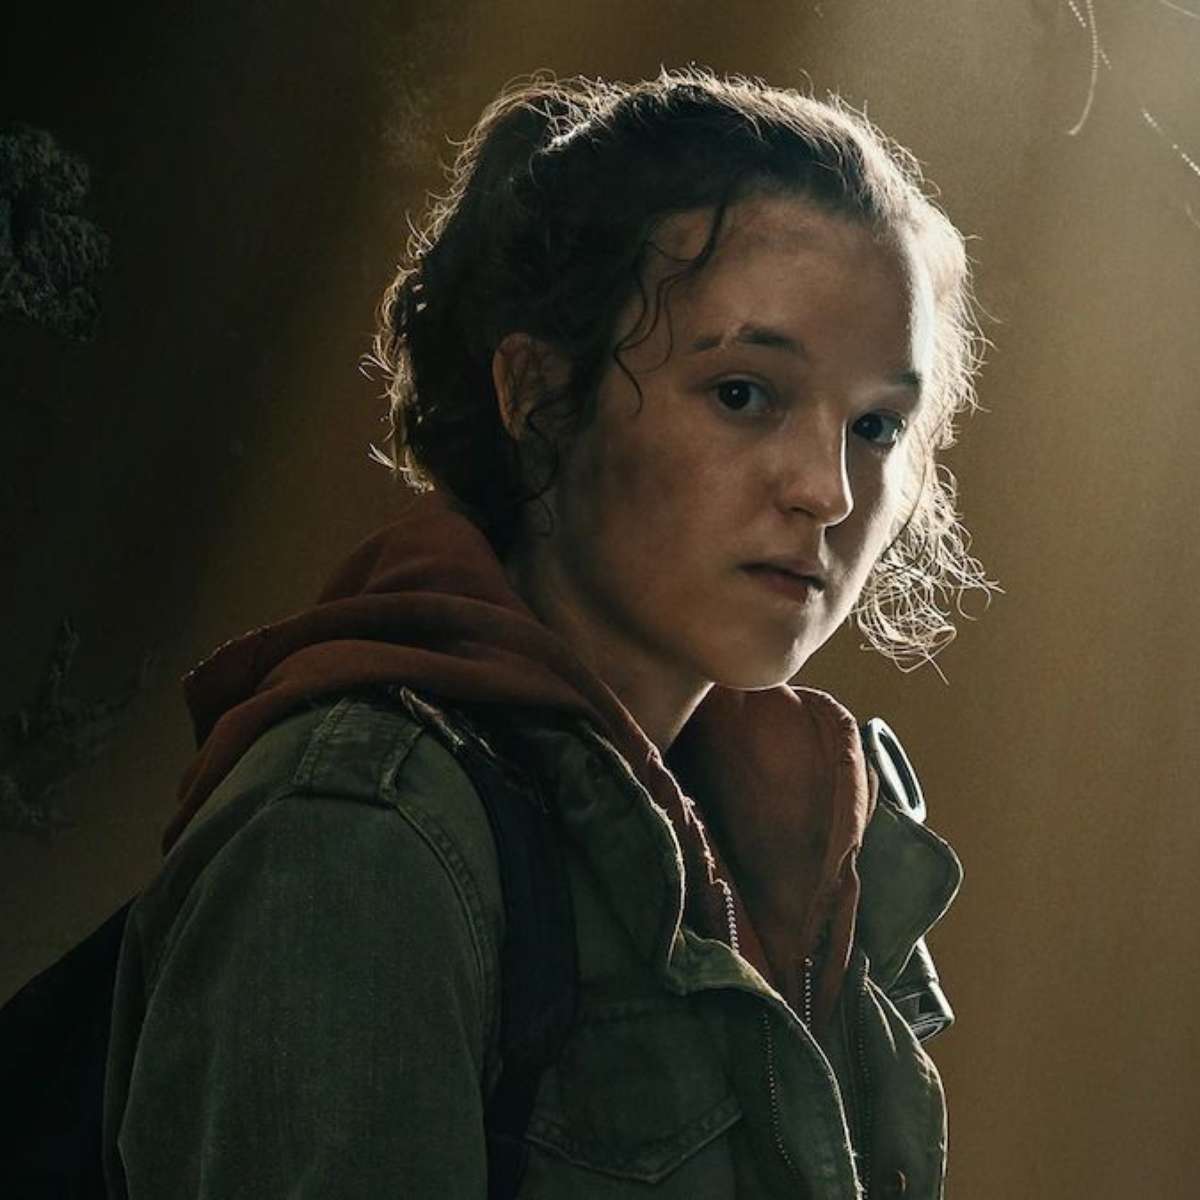 The Last of Us: novo DLC contará a história de Ellie e Riley